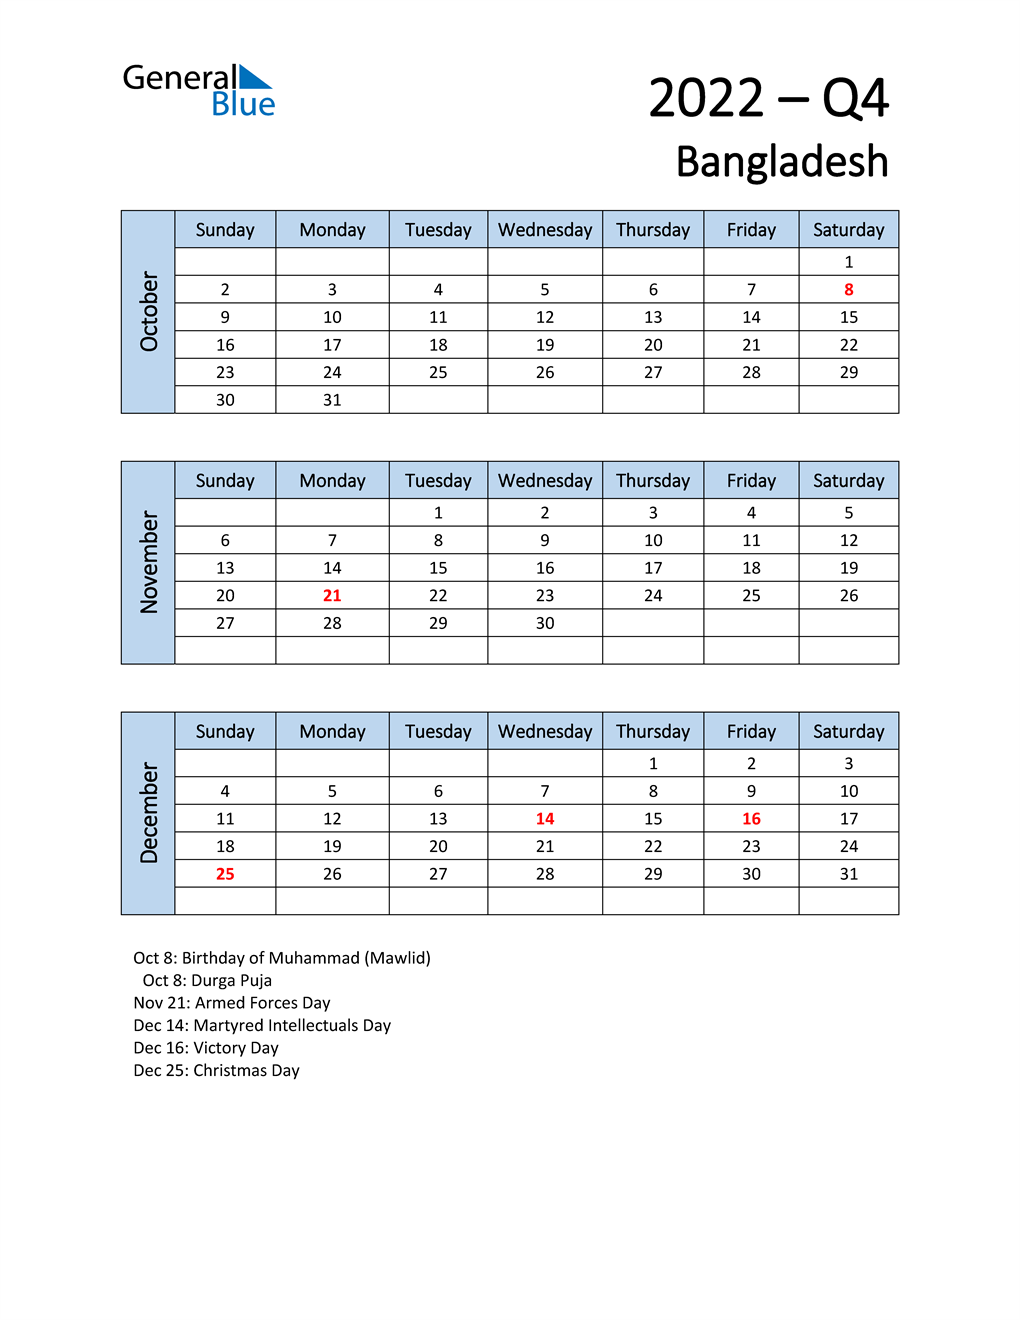  Free Q4 2022 Calendar for Bangladesh